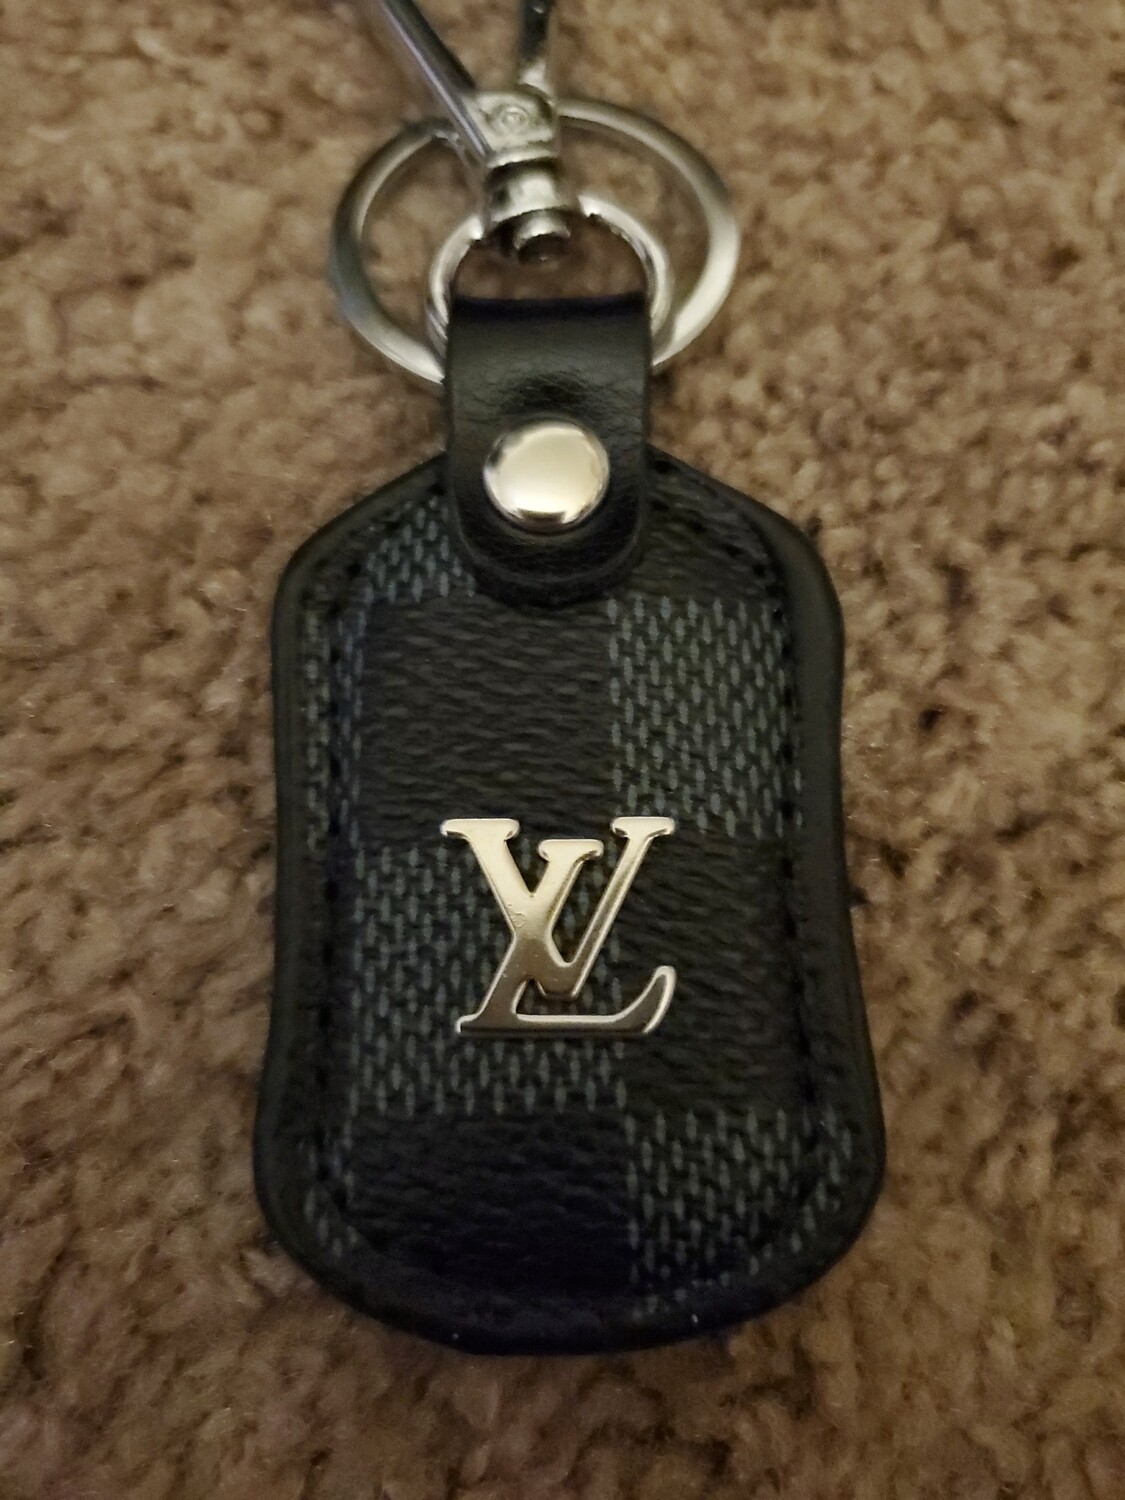 LV key chain